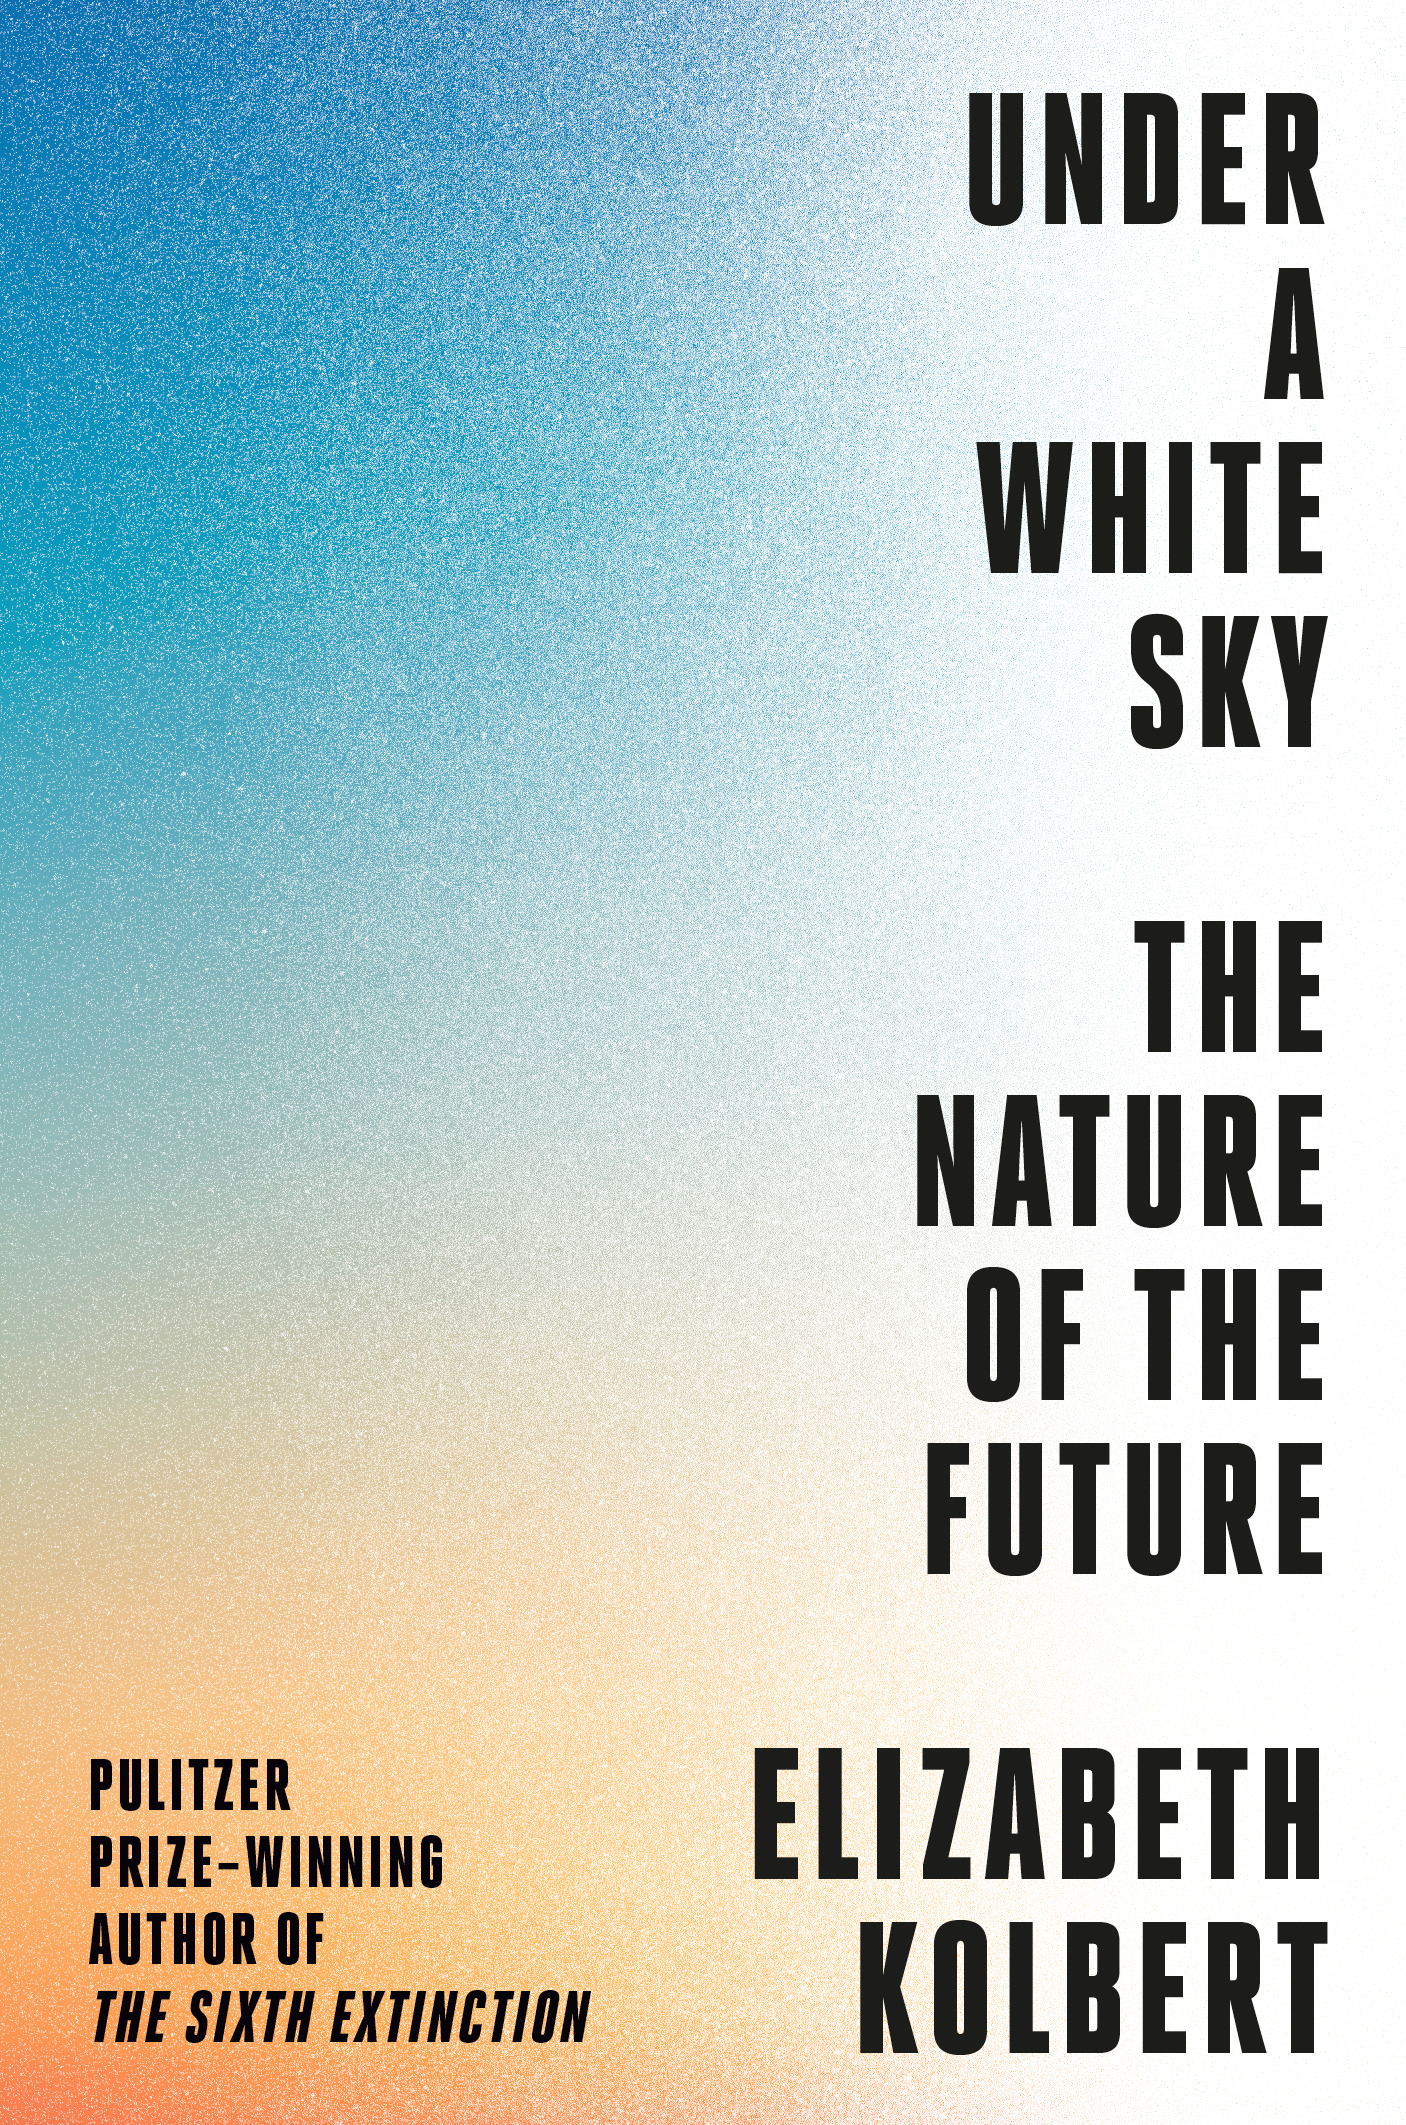 UNDER A WHITE SKY by Elizabeth Kolbert